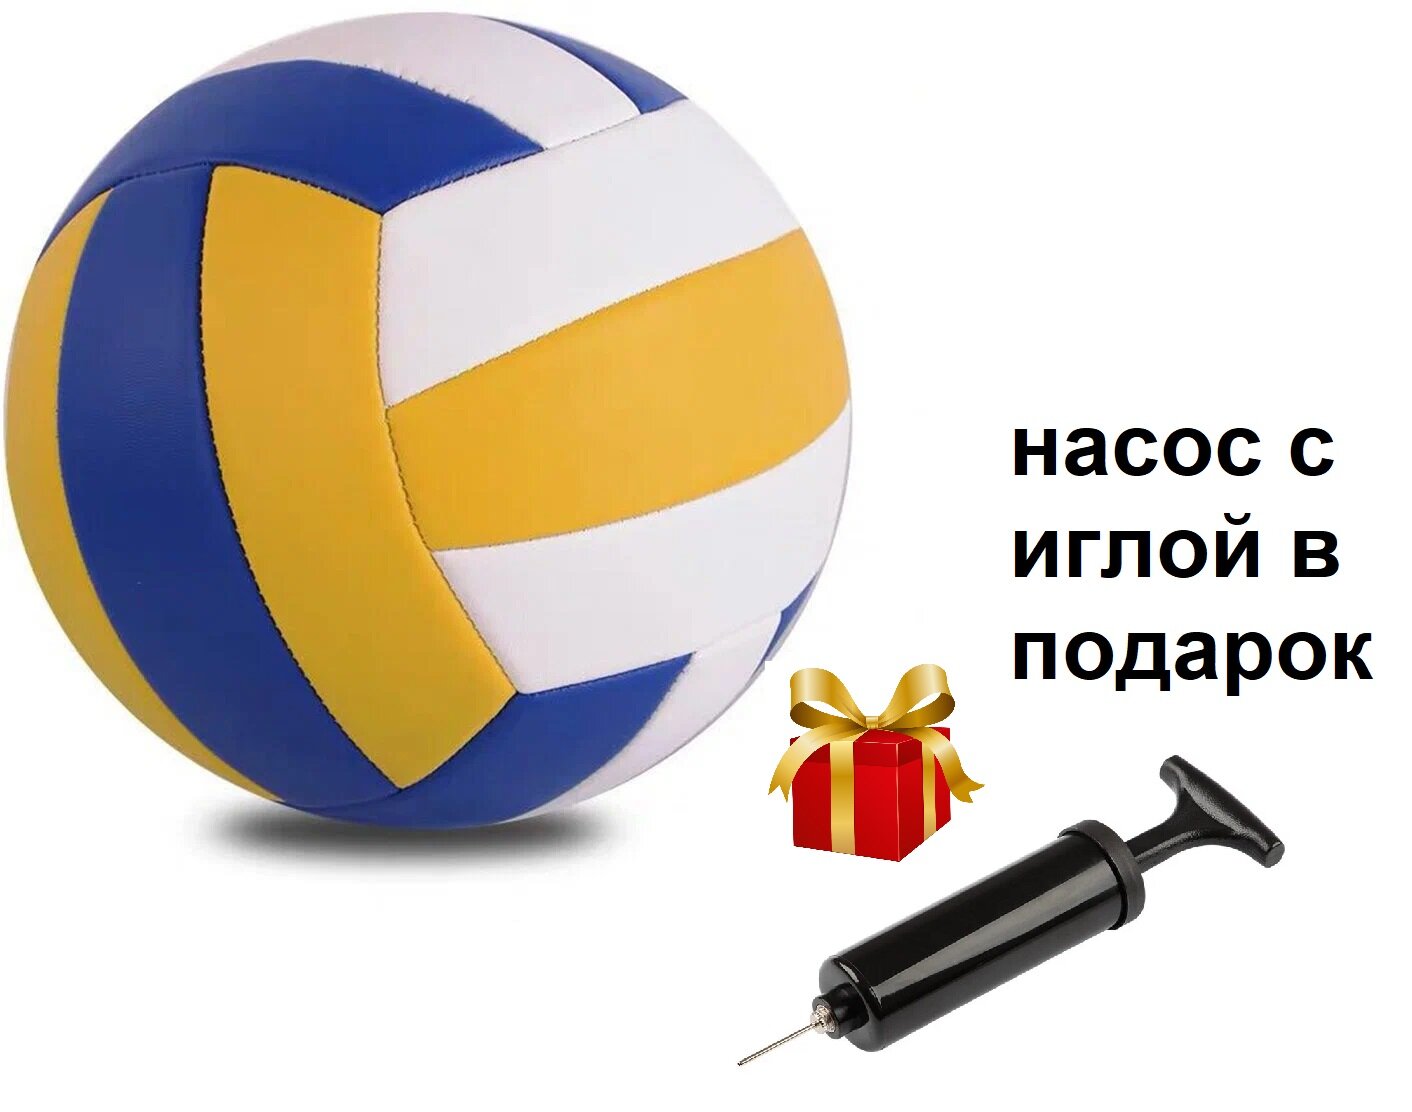 Мяч волейбольный, насос в подарок